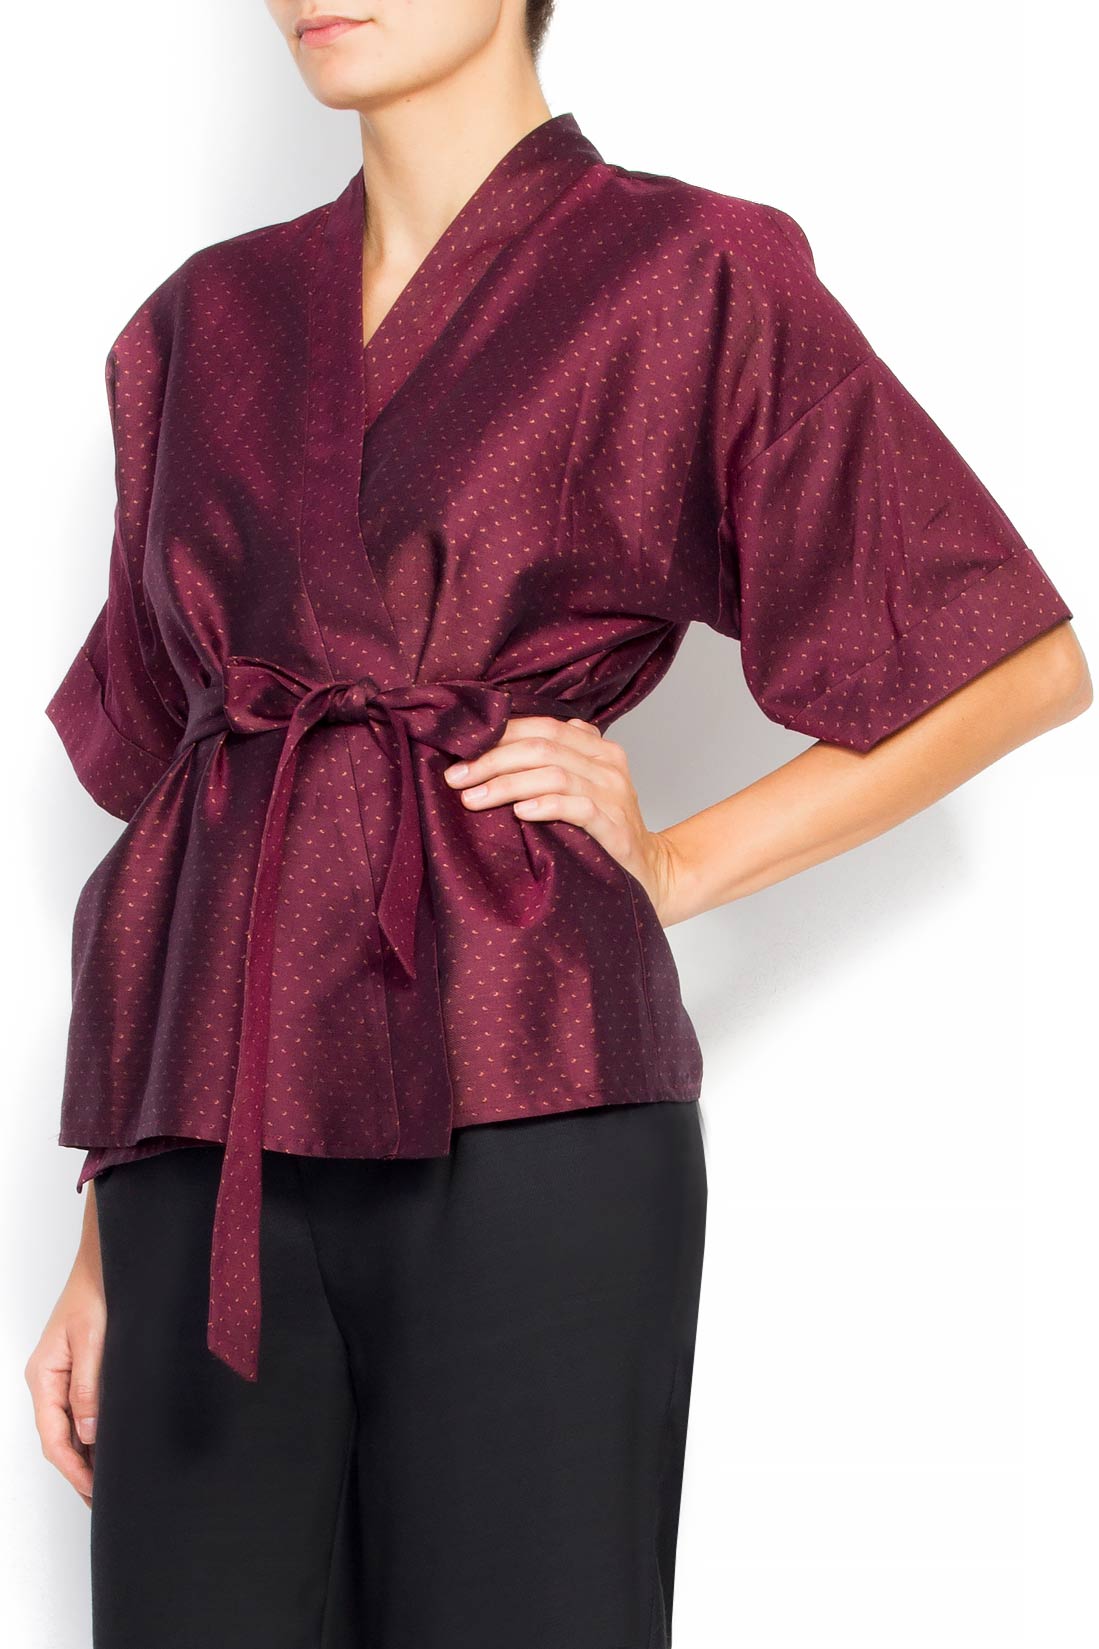 Kimono type cotton top Claudia Castrase image 1